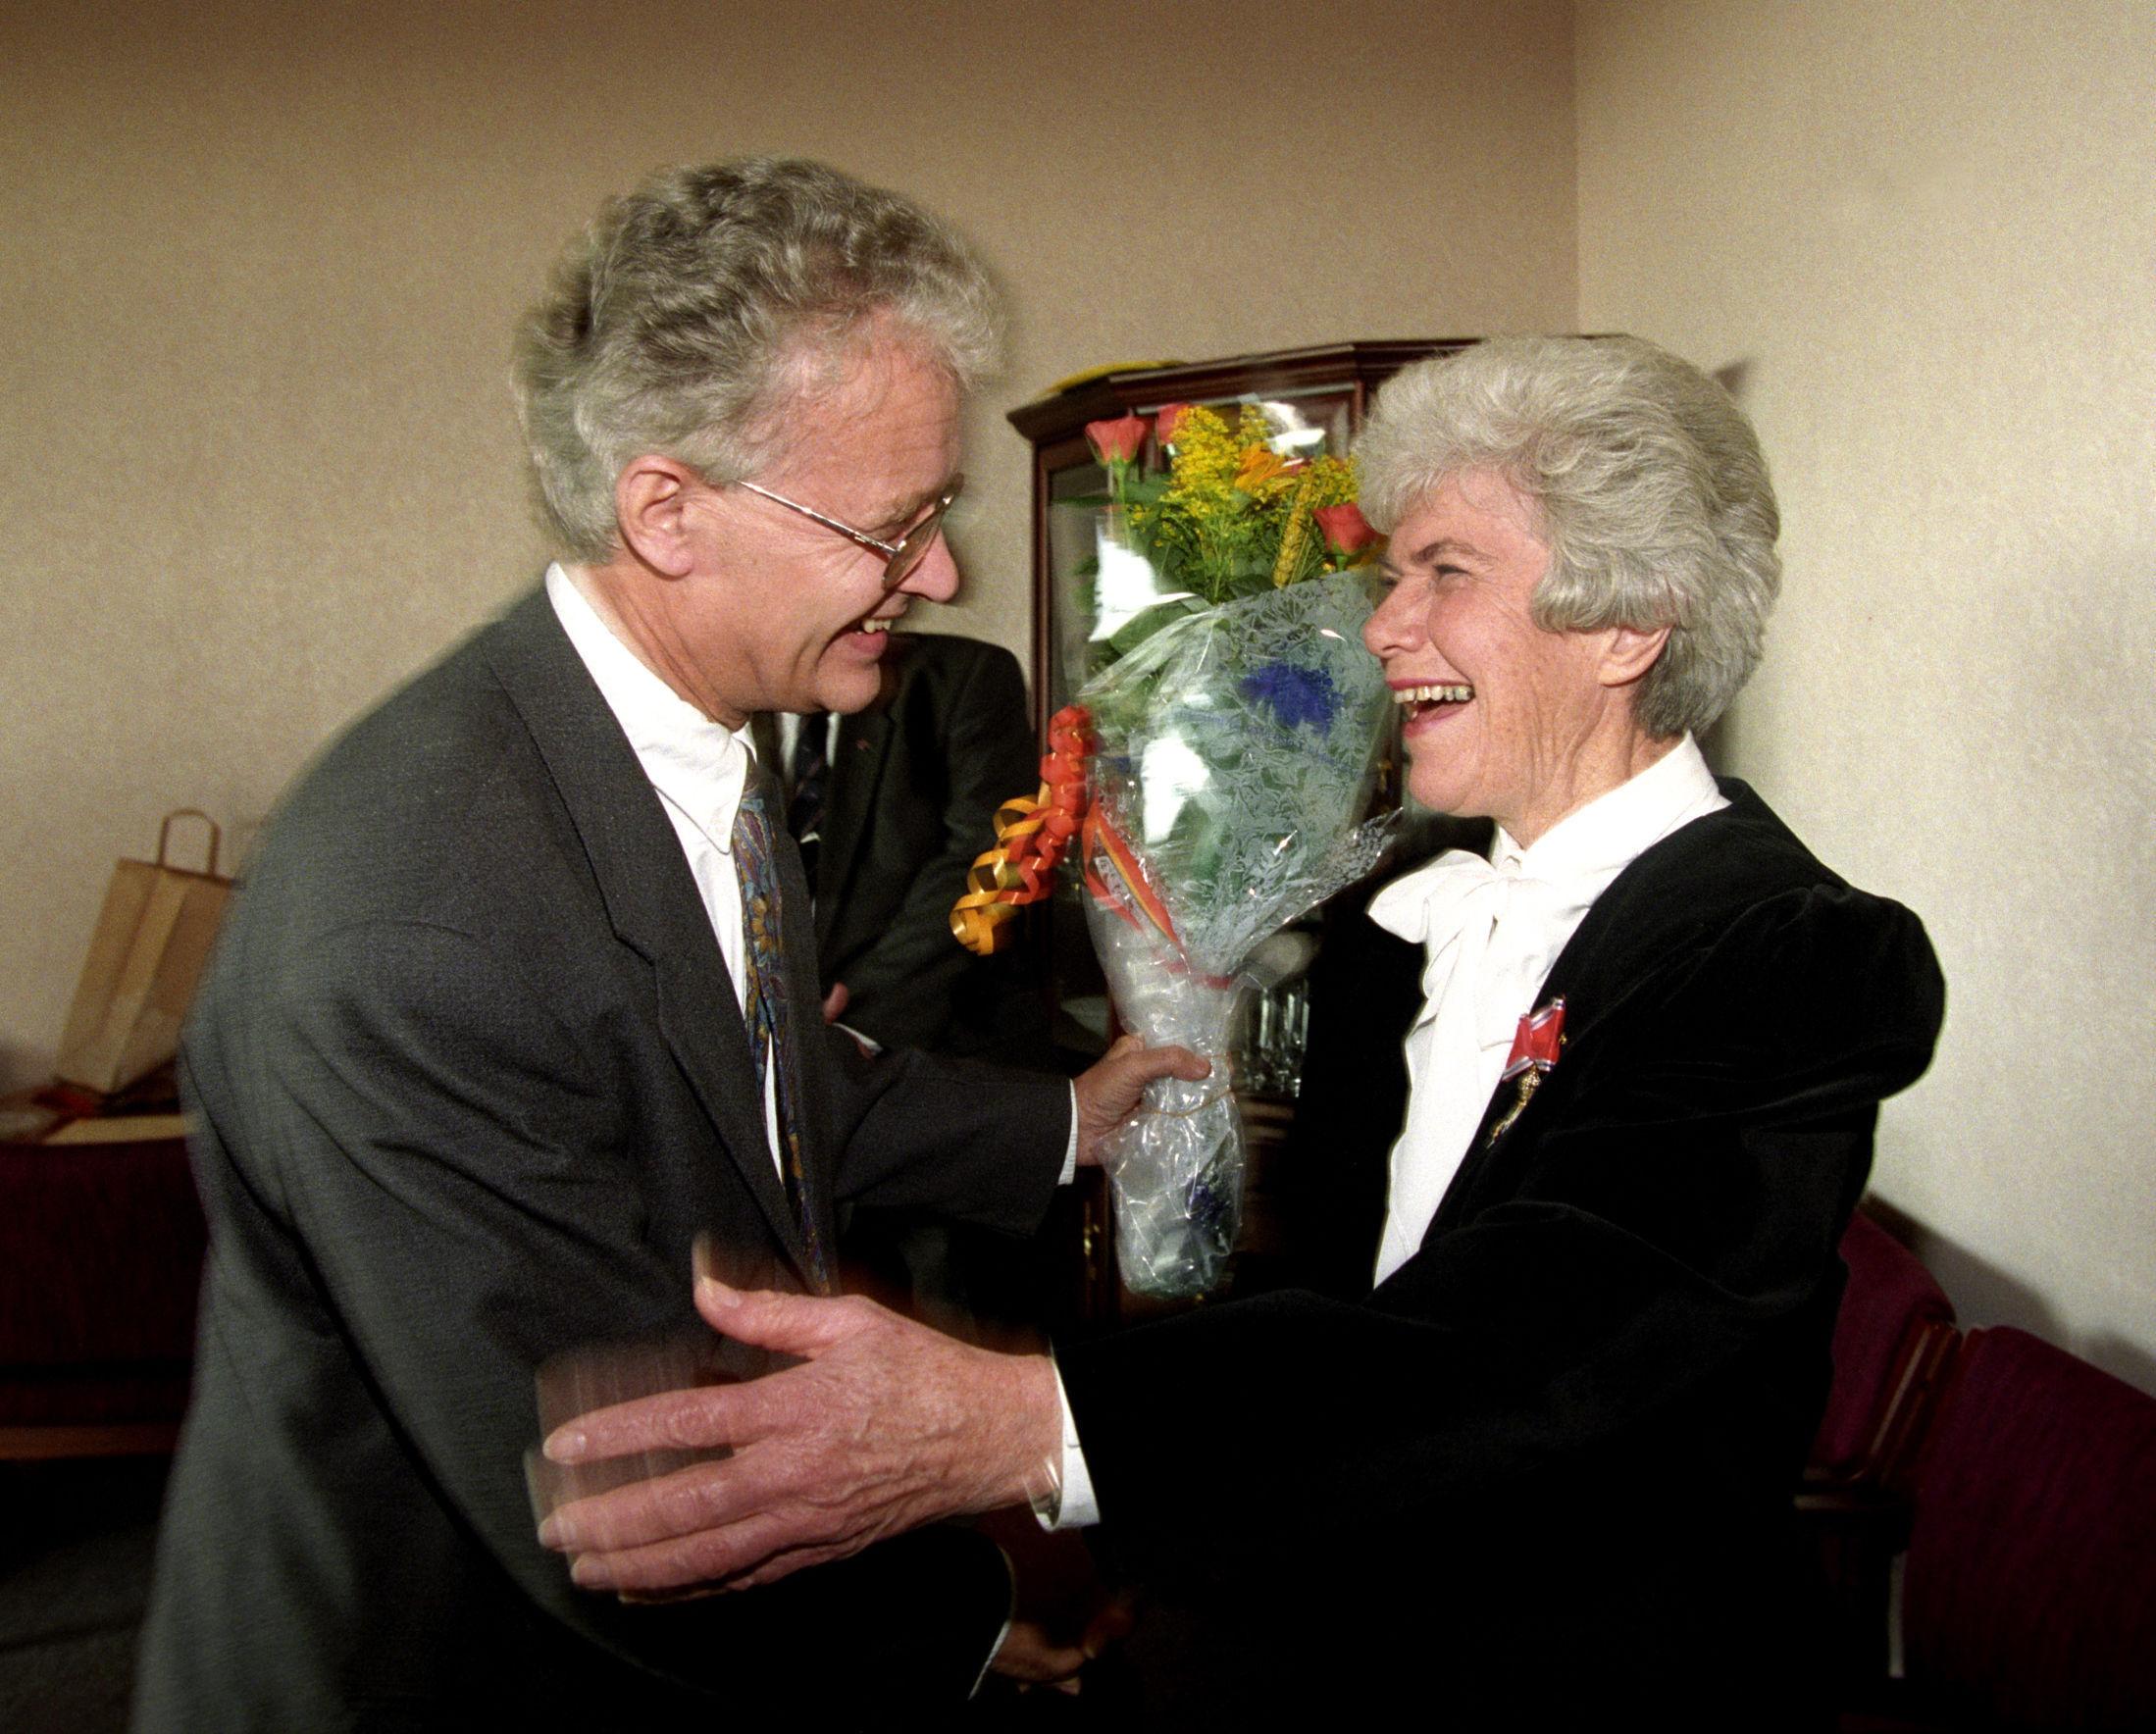 1994: For 20 år siden ble Ingrid Espelid Hovig utnevnt ridder av 1. klasse av St. Olavs Orden. Her sammen med daværende kringkastingssjef Einar Førde. Foto: Erik Johansen / NTB scanpix